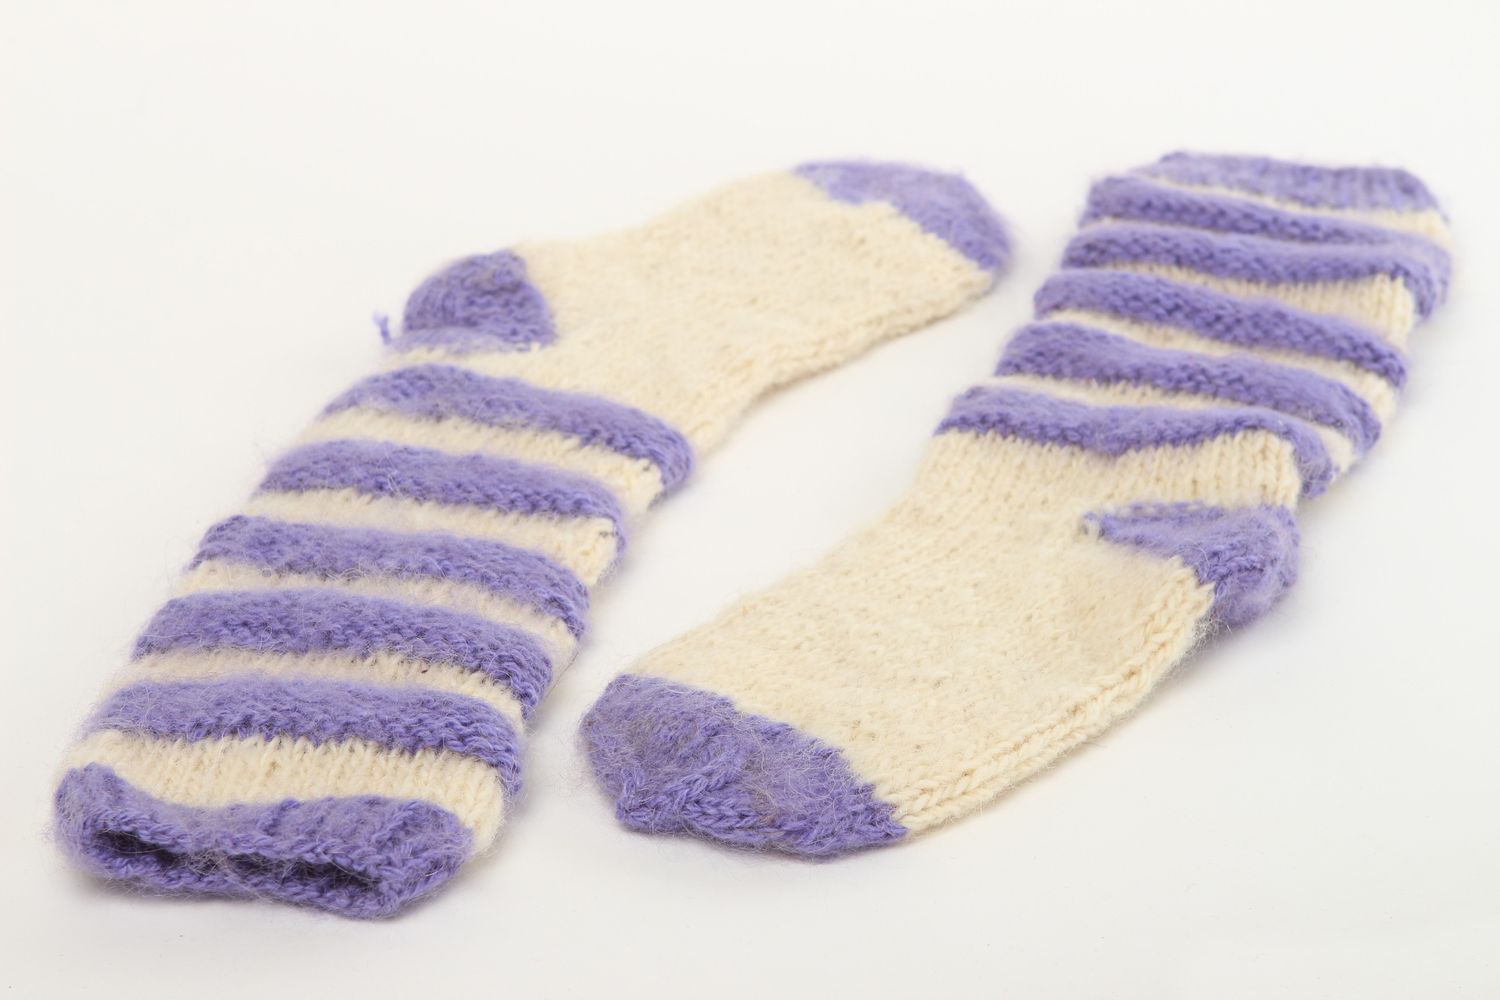 Handmade warm socks wool socks knitted socks for women winter clothing photo 3